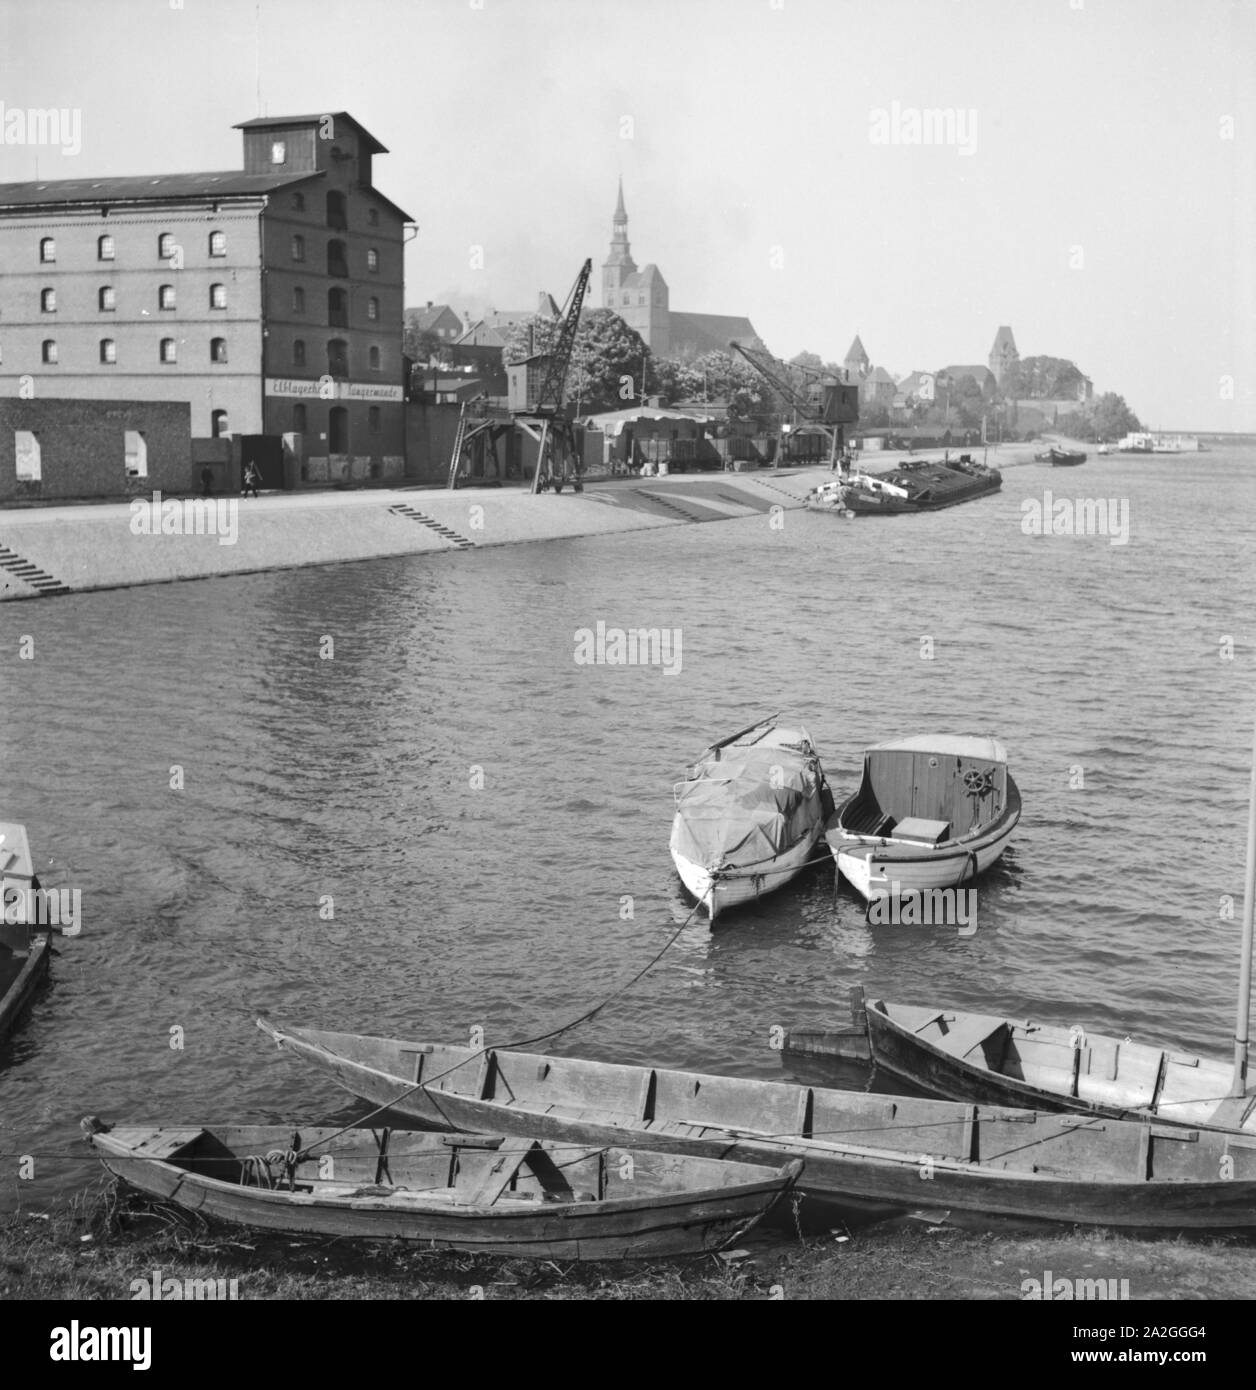 Unterwegs in der alten Hansestadt Tangermünde, Deutschland 1930er Jahre. Presso la vecchia città di Tangermuende, Germania 1930s. Foto Stock